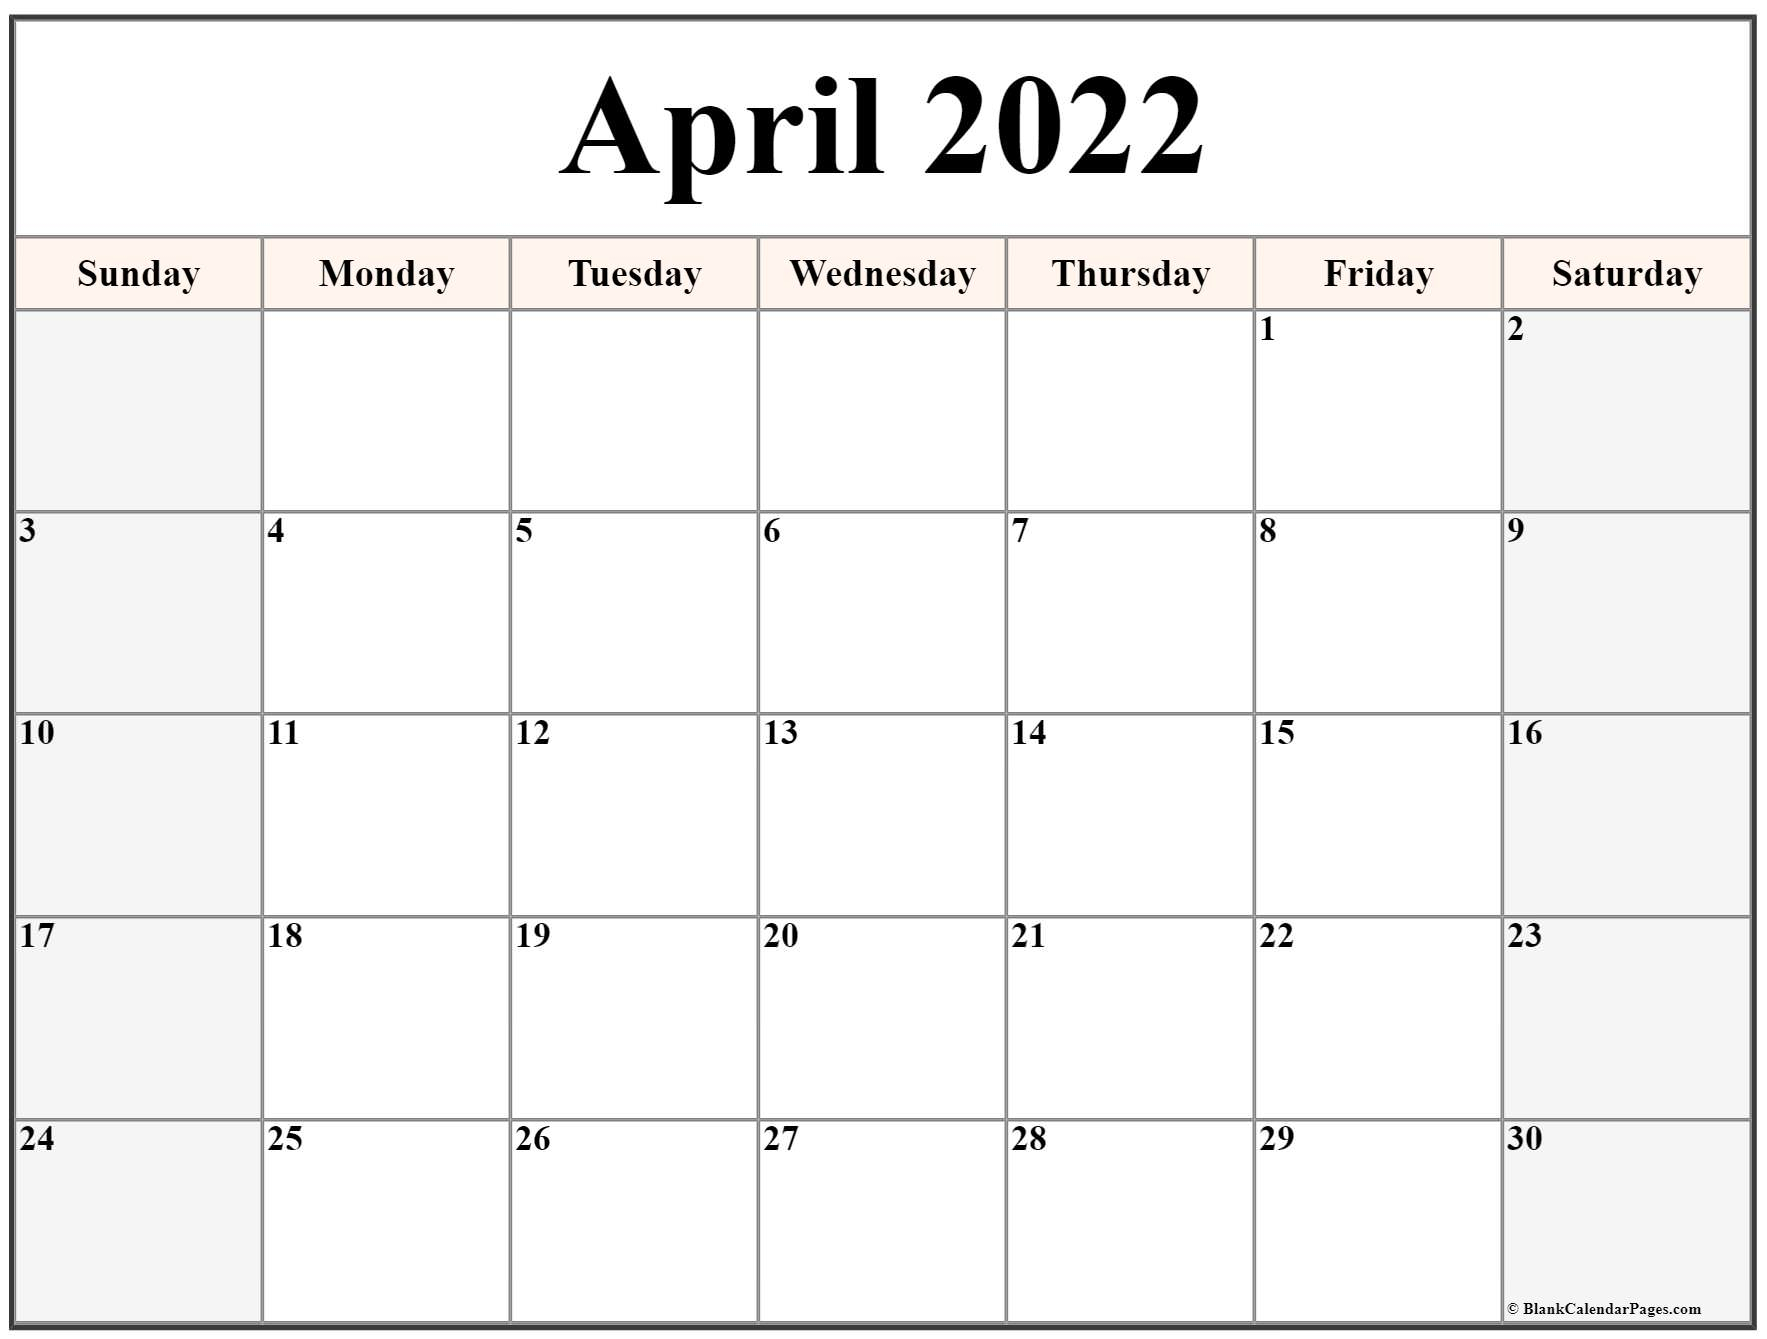 Get April 17 2022 Calendar